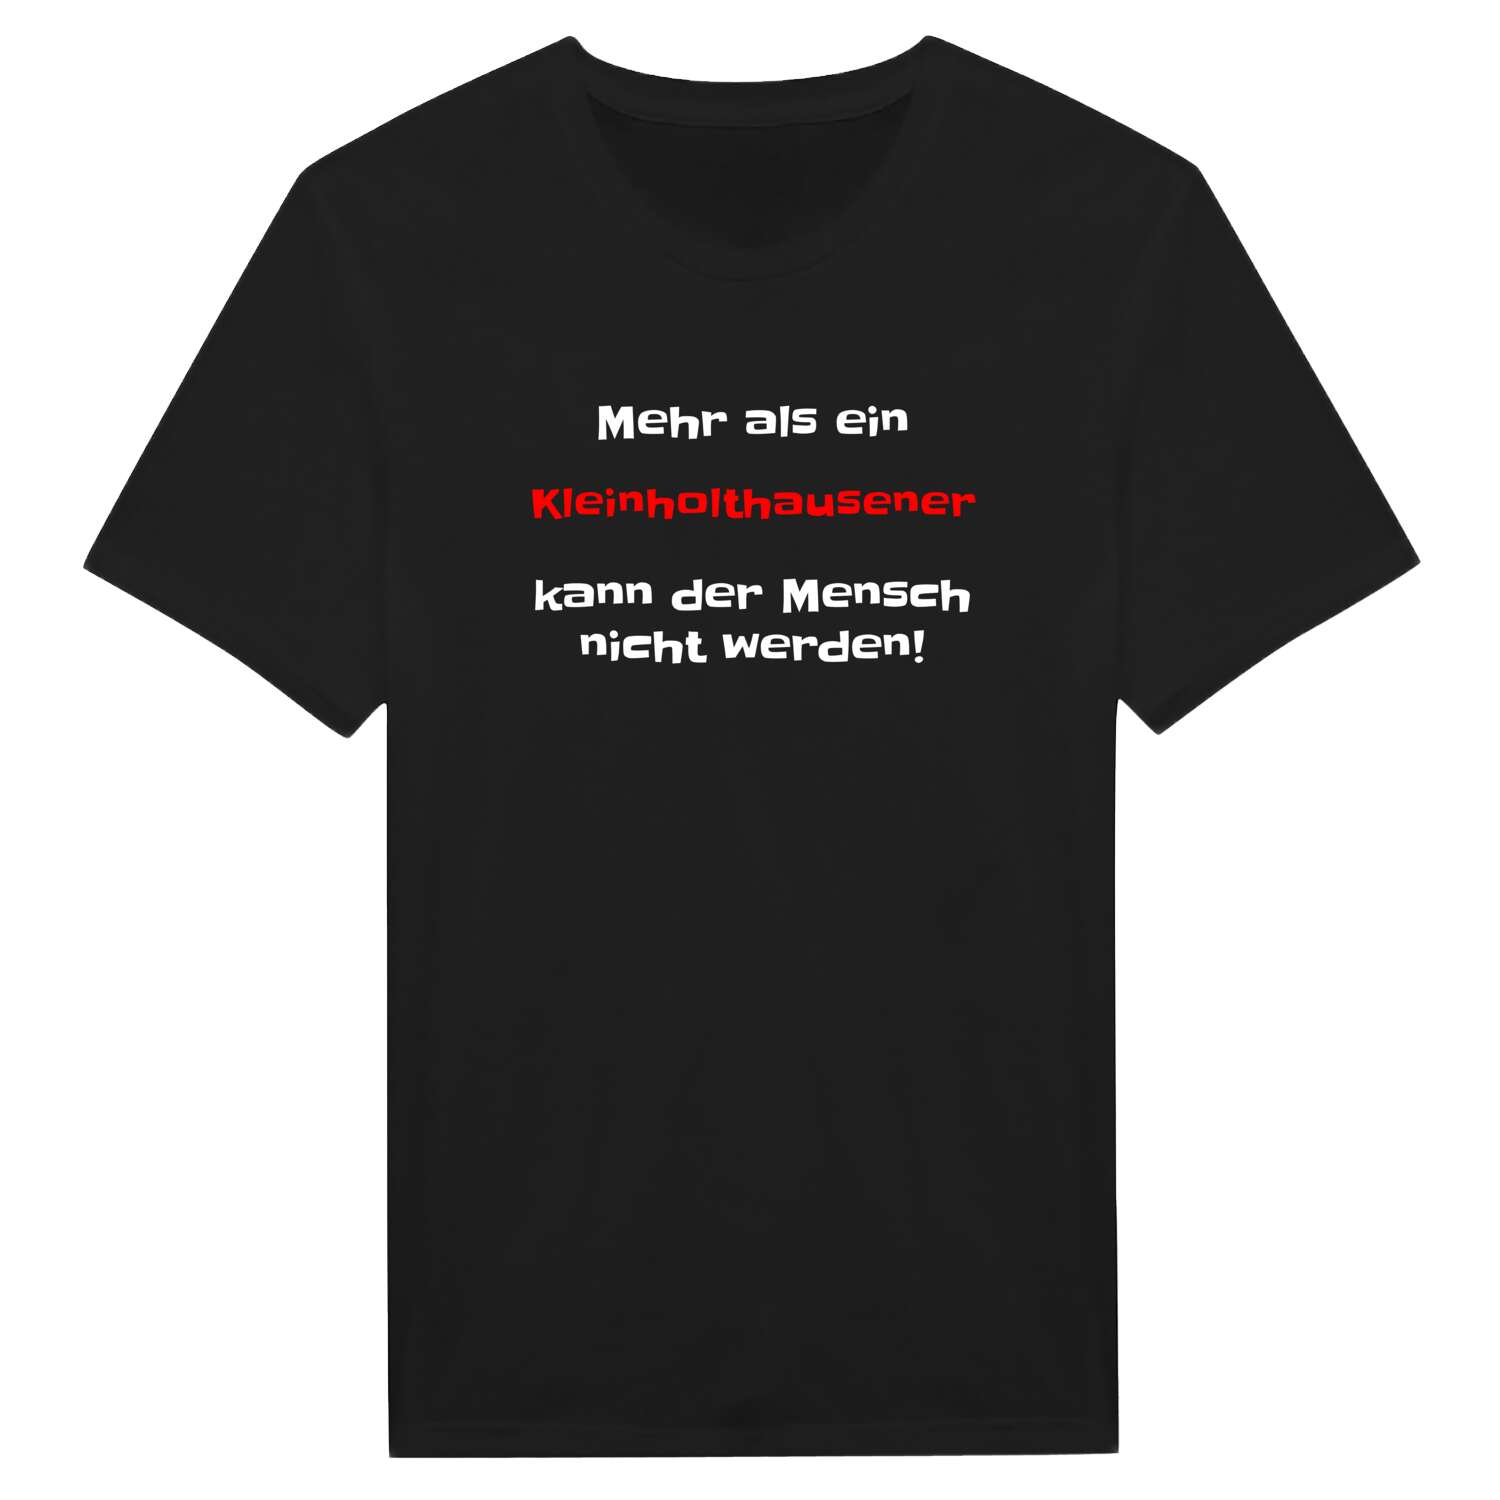 Kleinholthausen T-Shirt »Mehr als ein«